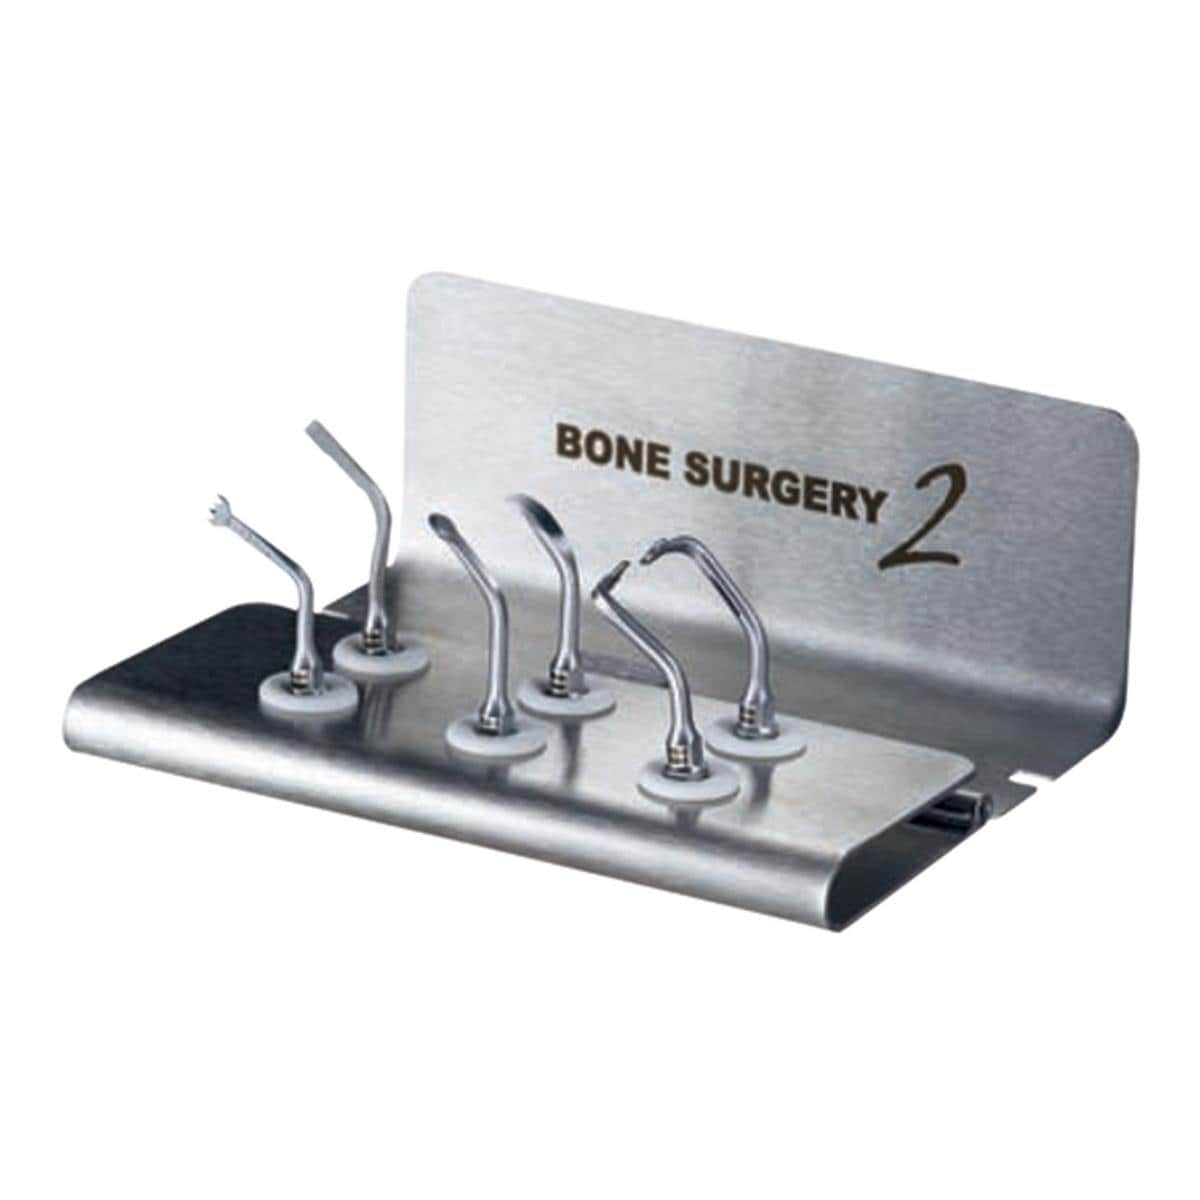 Piezotome II Bone Surgery Pk (HP, Tips,Wrench,Box)